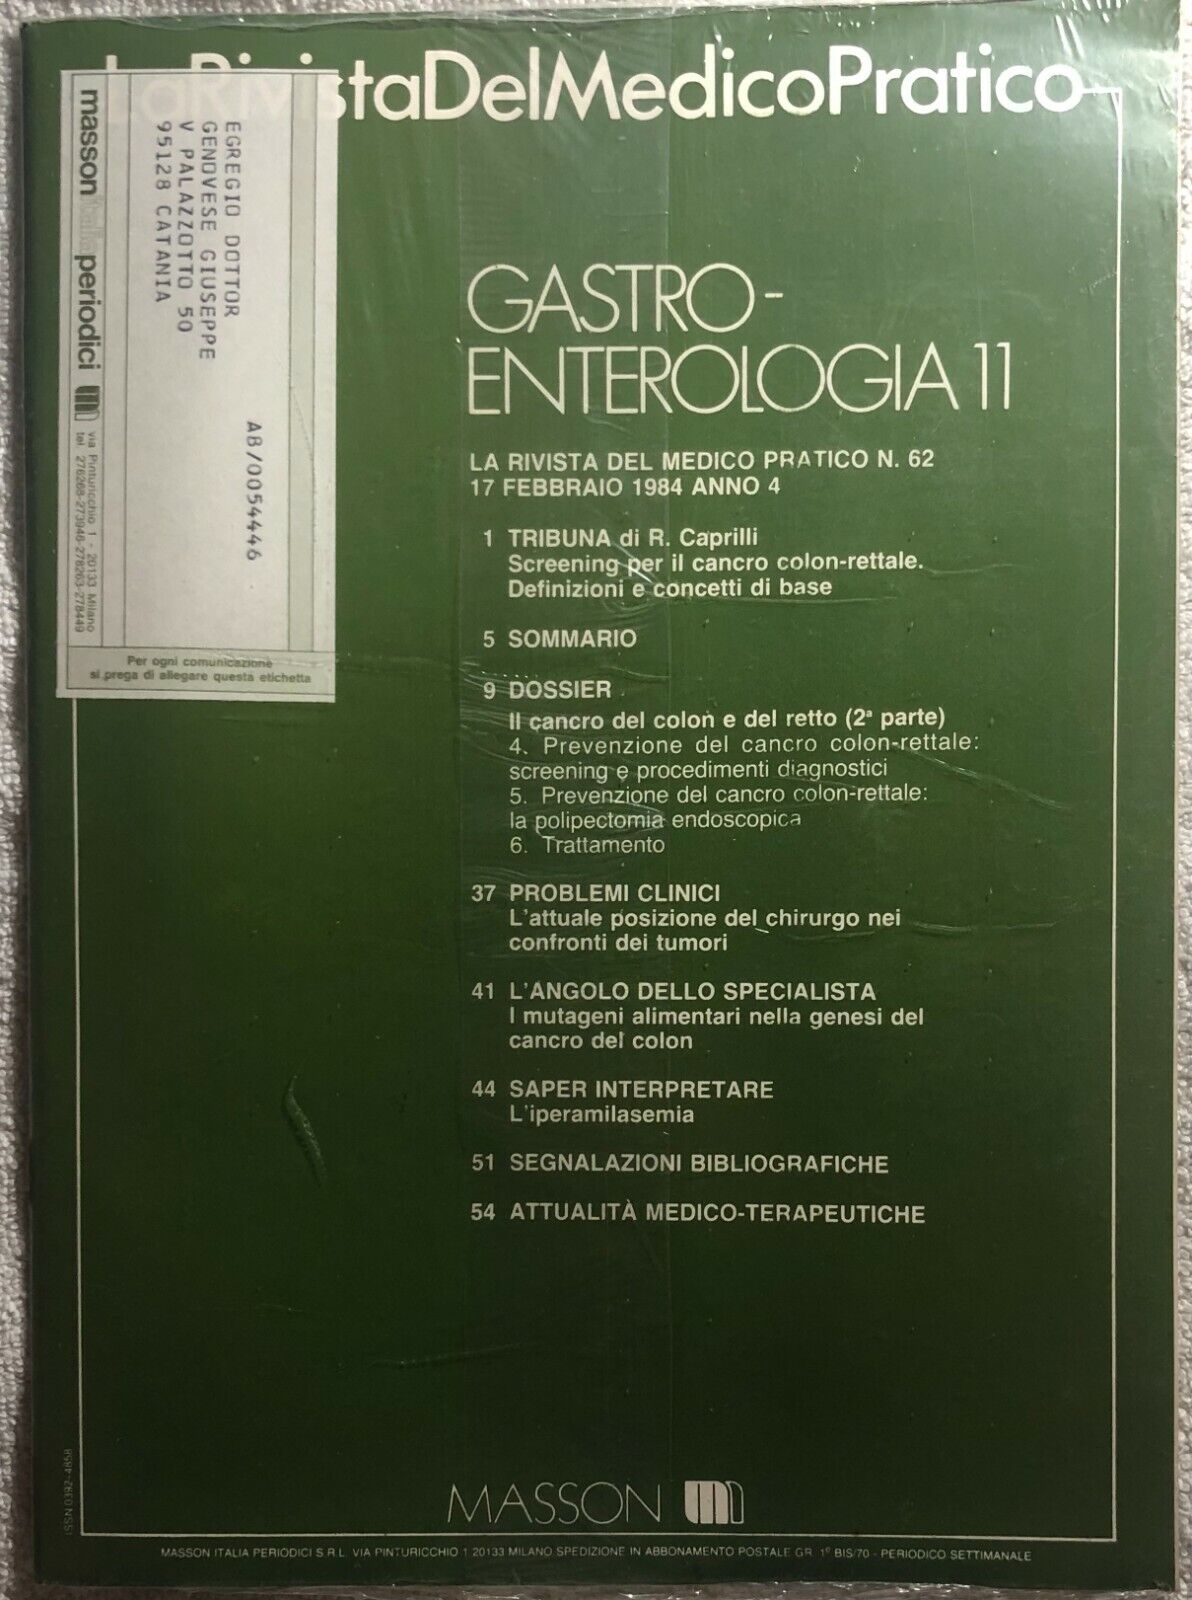 La rivista del medico pratico n.62 di Aa.vv.,  1984,  Masson